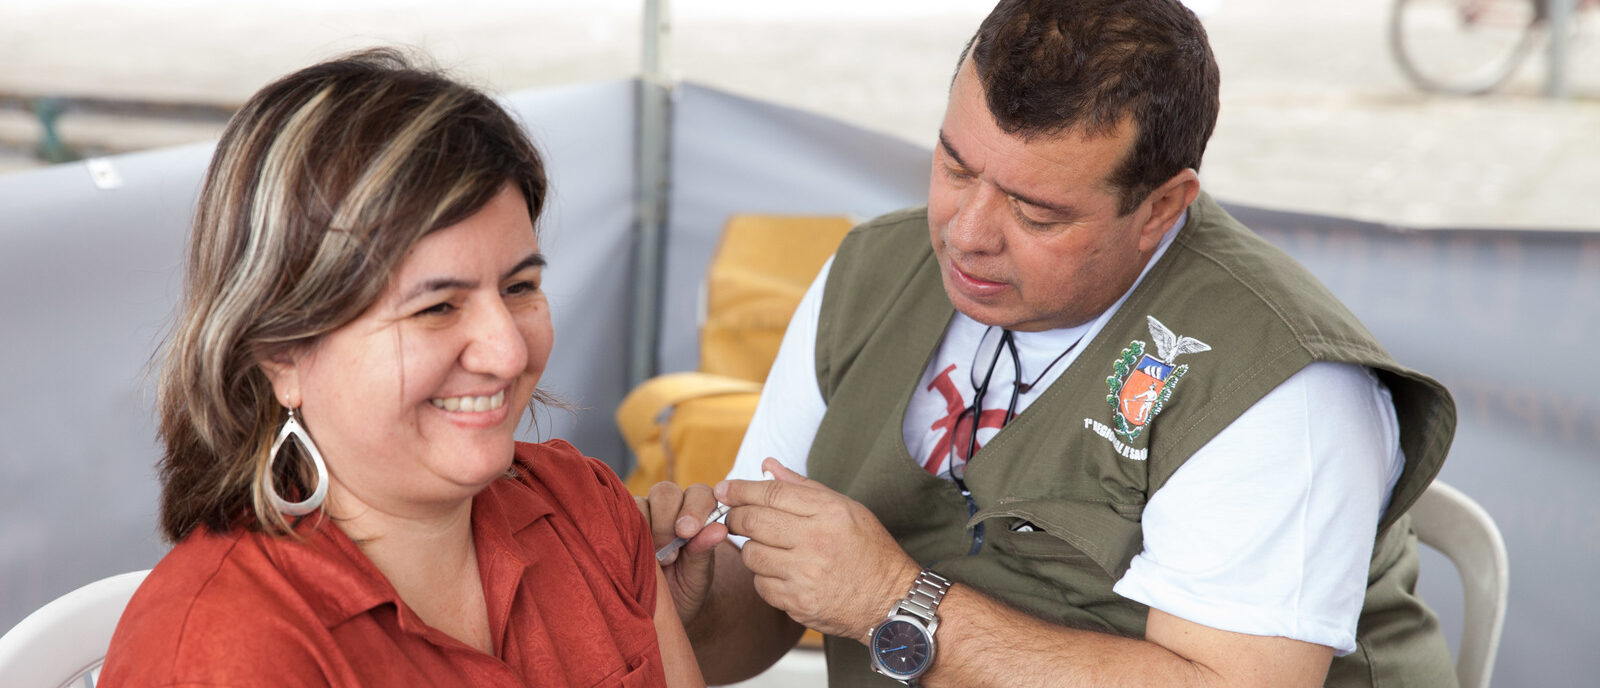 Les évêques brésiliens recommandent la vaccination pour tous | photo d'illustration © Sanofi Pasteur/Flickr/CC BY-NC-ND 2.0